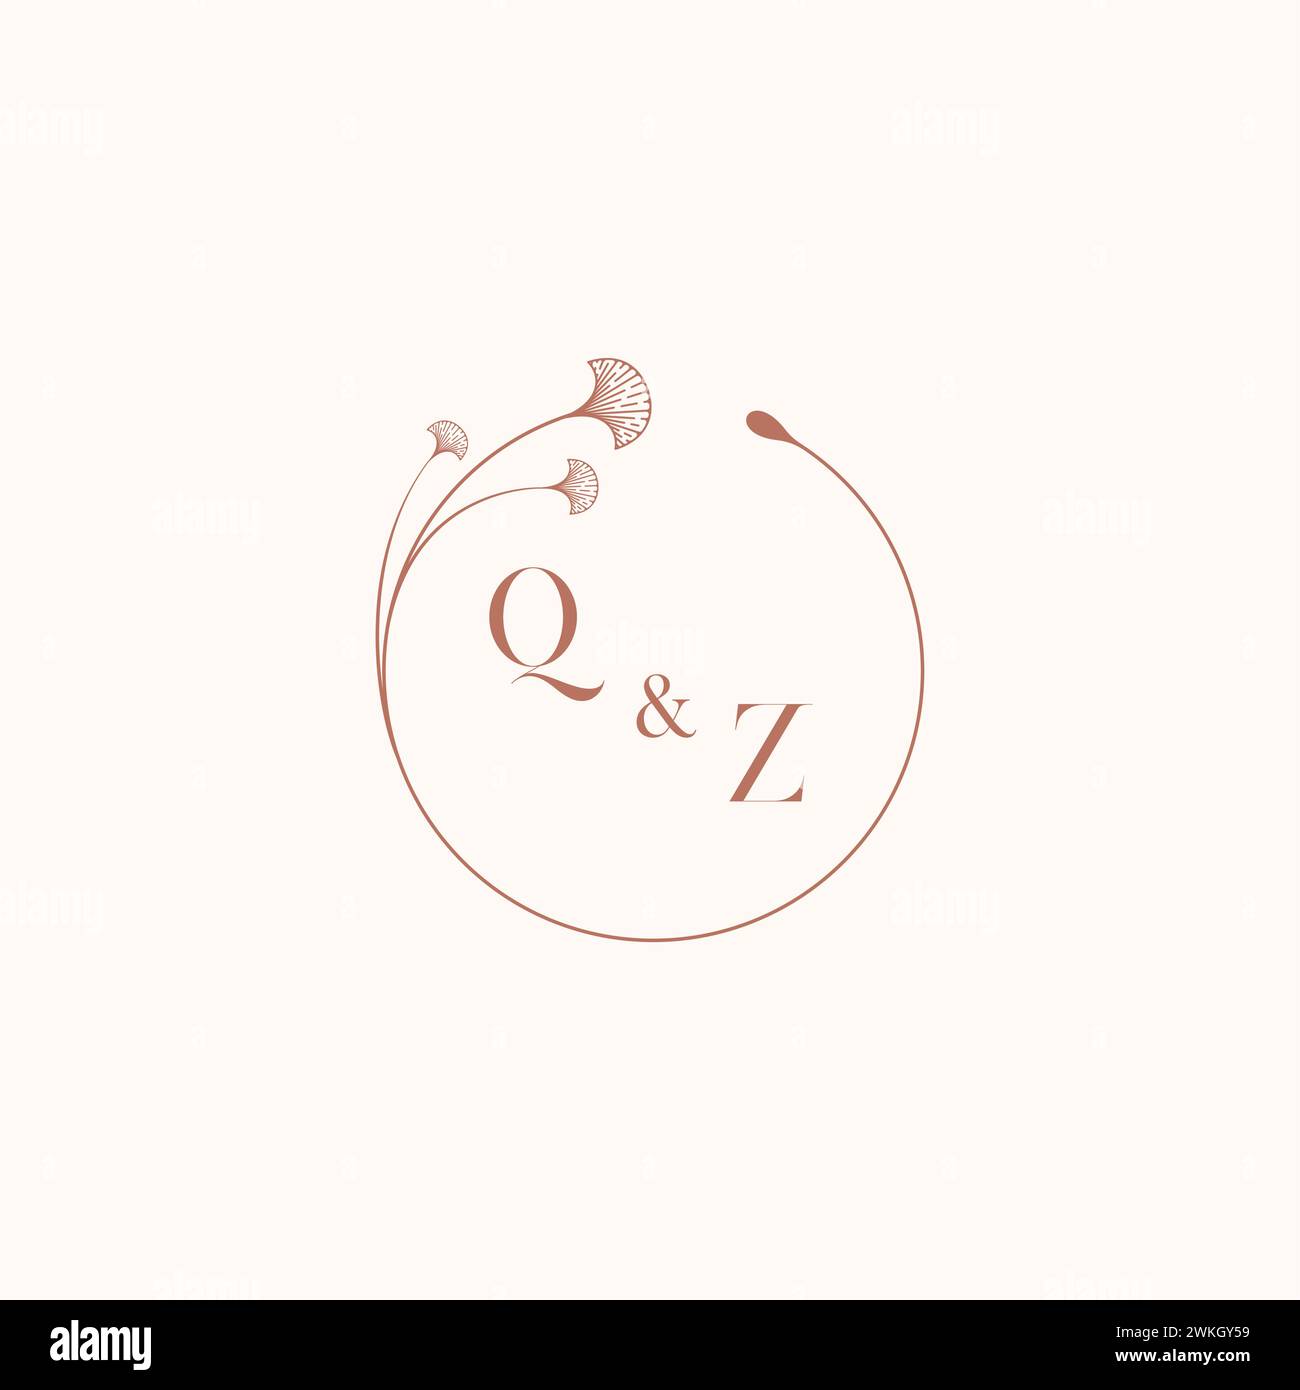 QZ wedding monogram logo designideas as inspiration Stock Vector